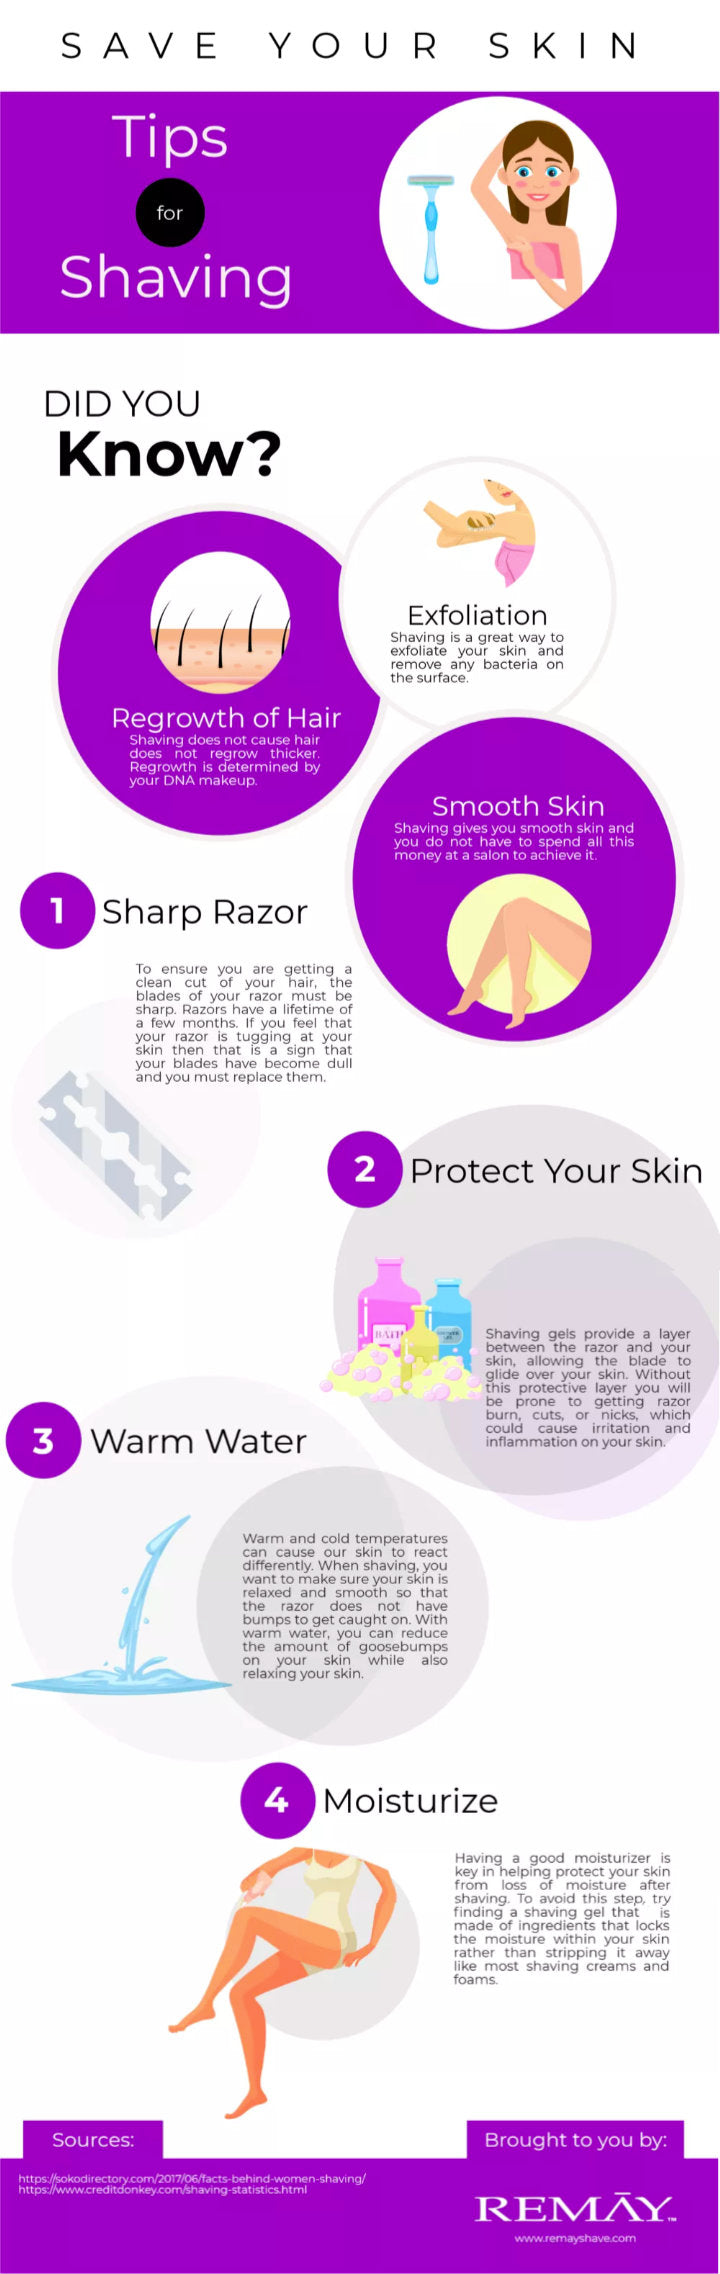 tips for shaving infographic